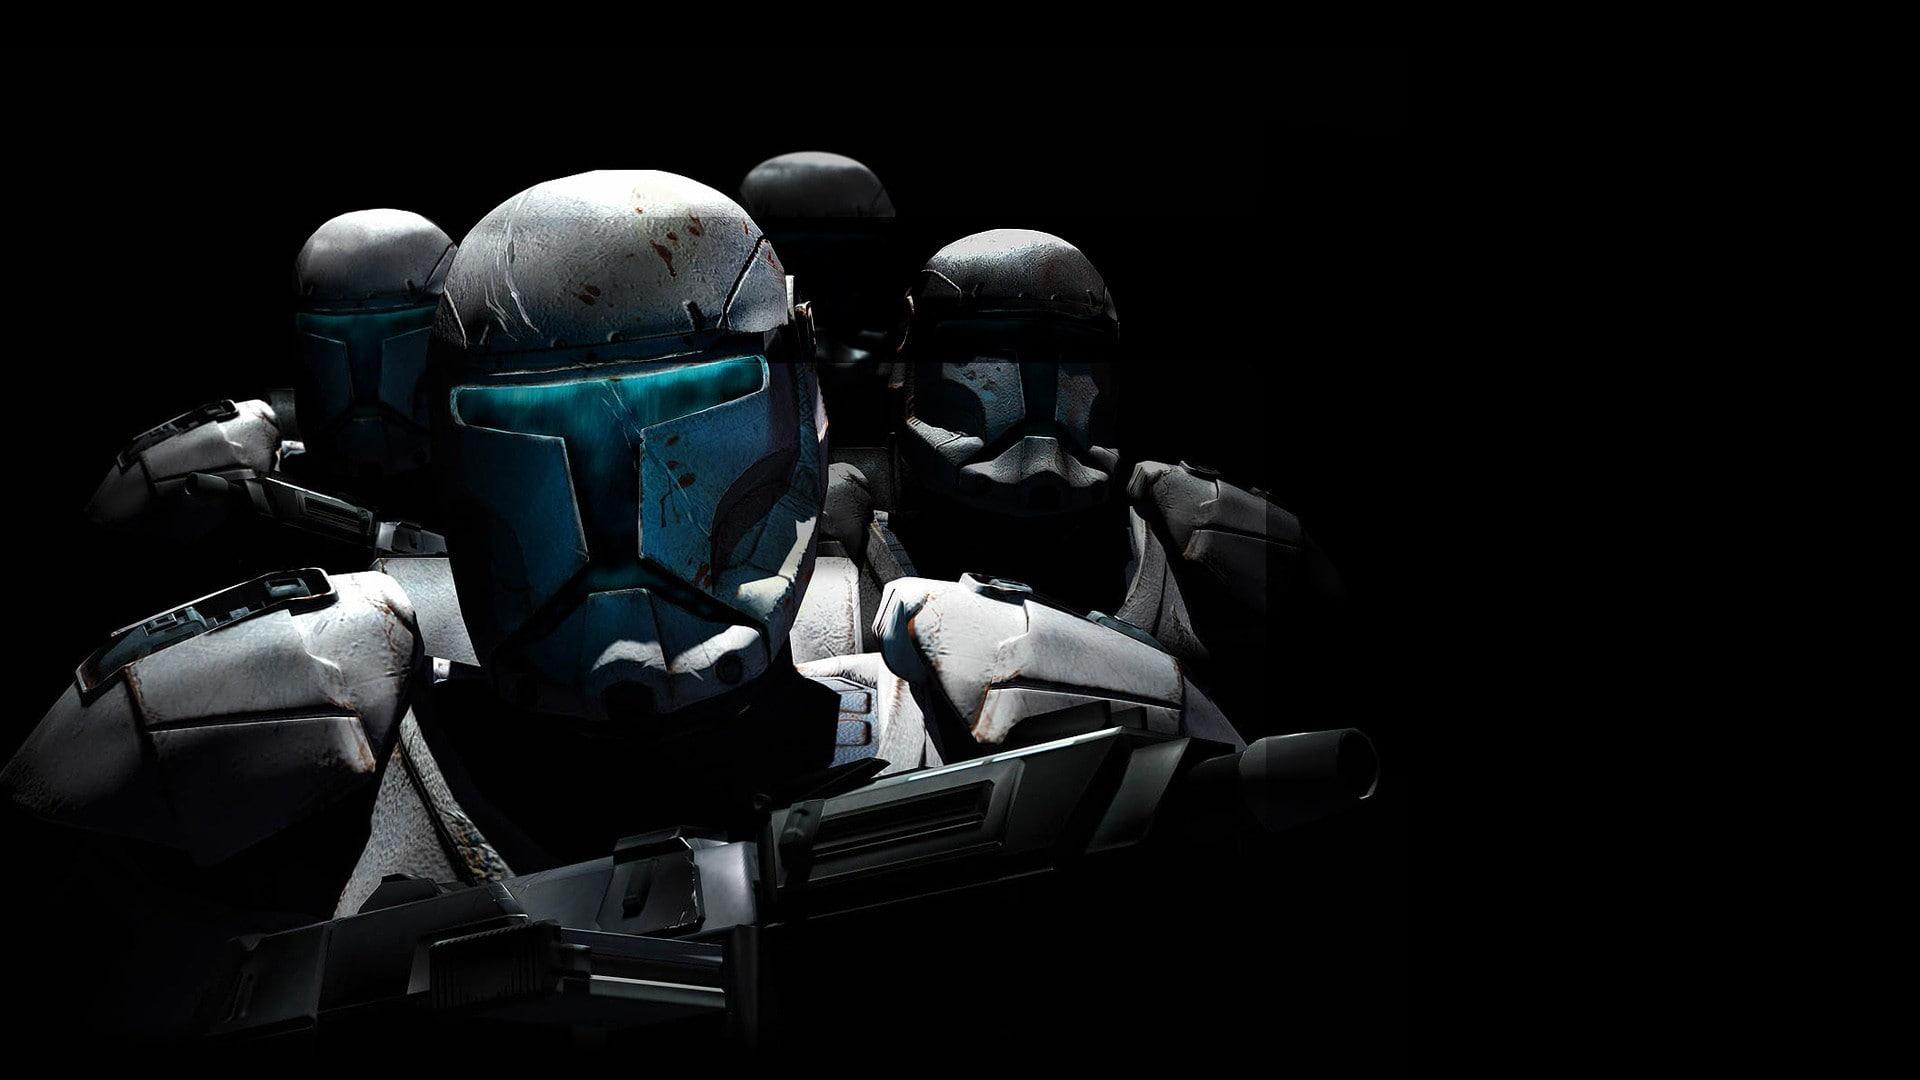 clone commando delta squad